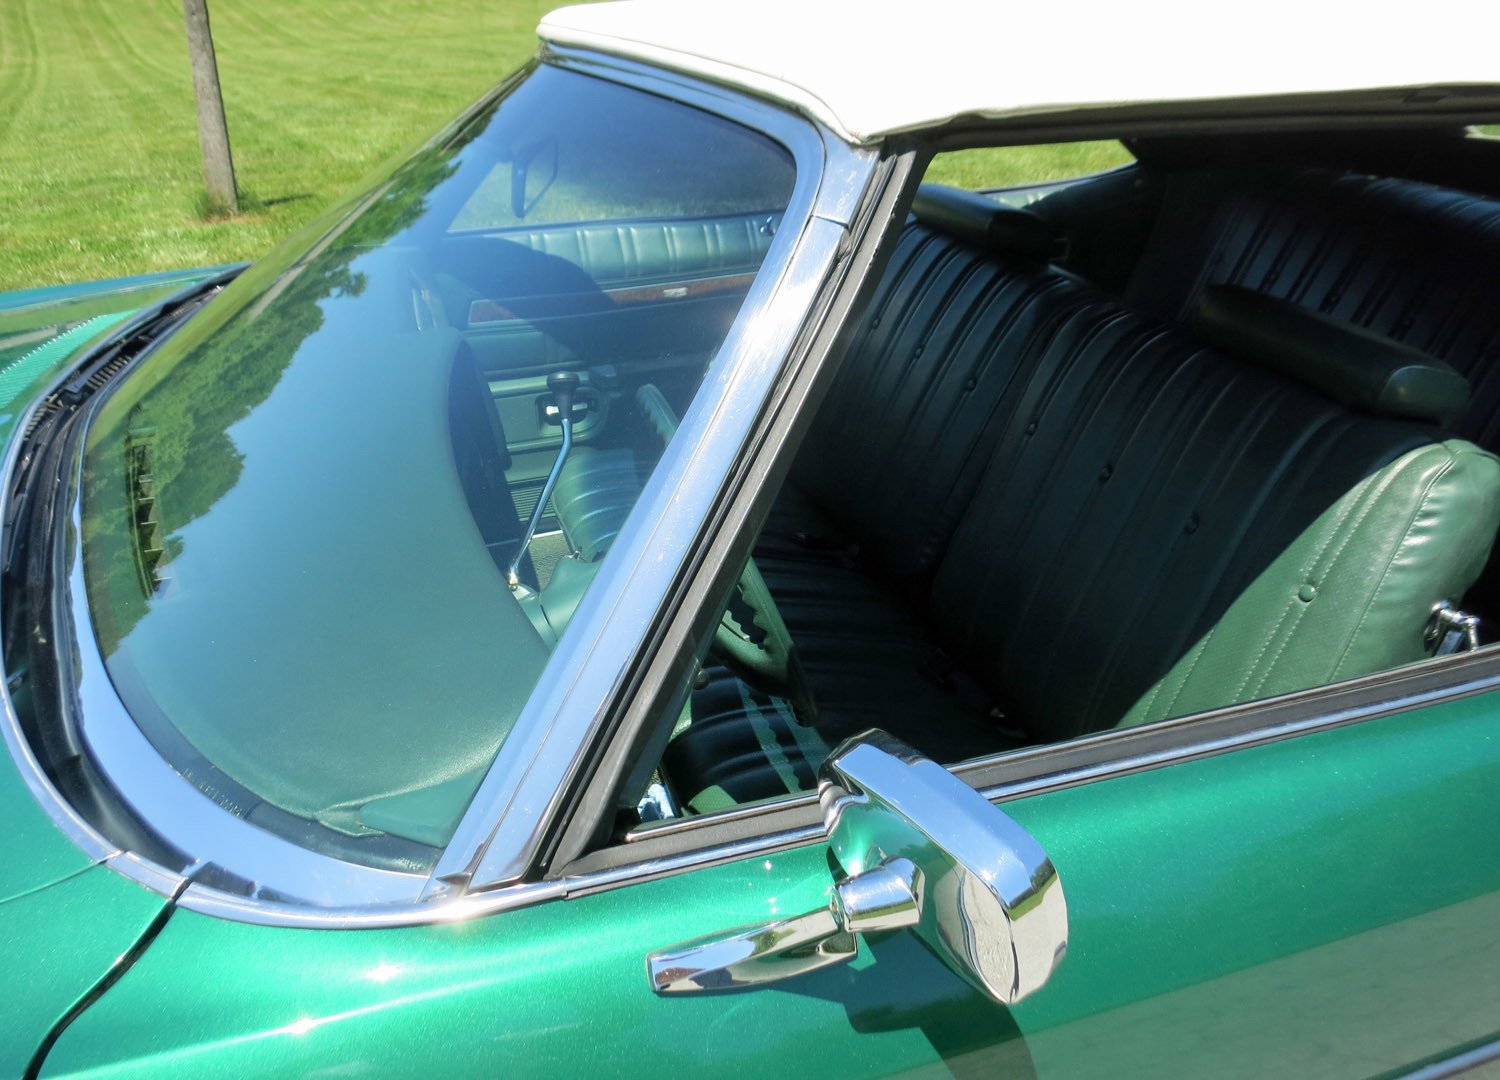 1973 Chevrolet Caprice